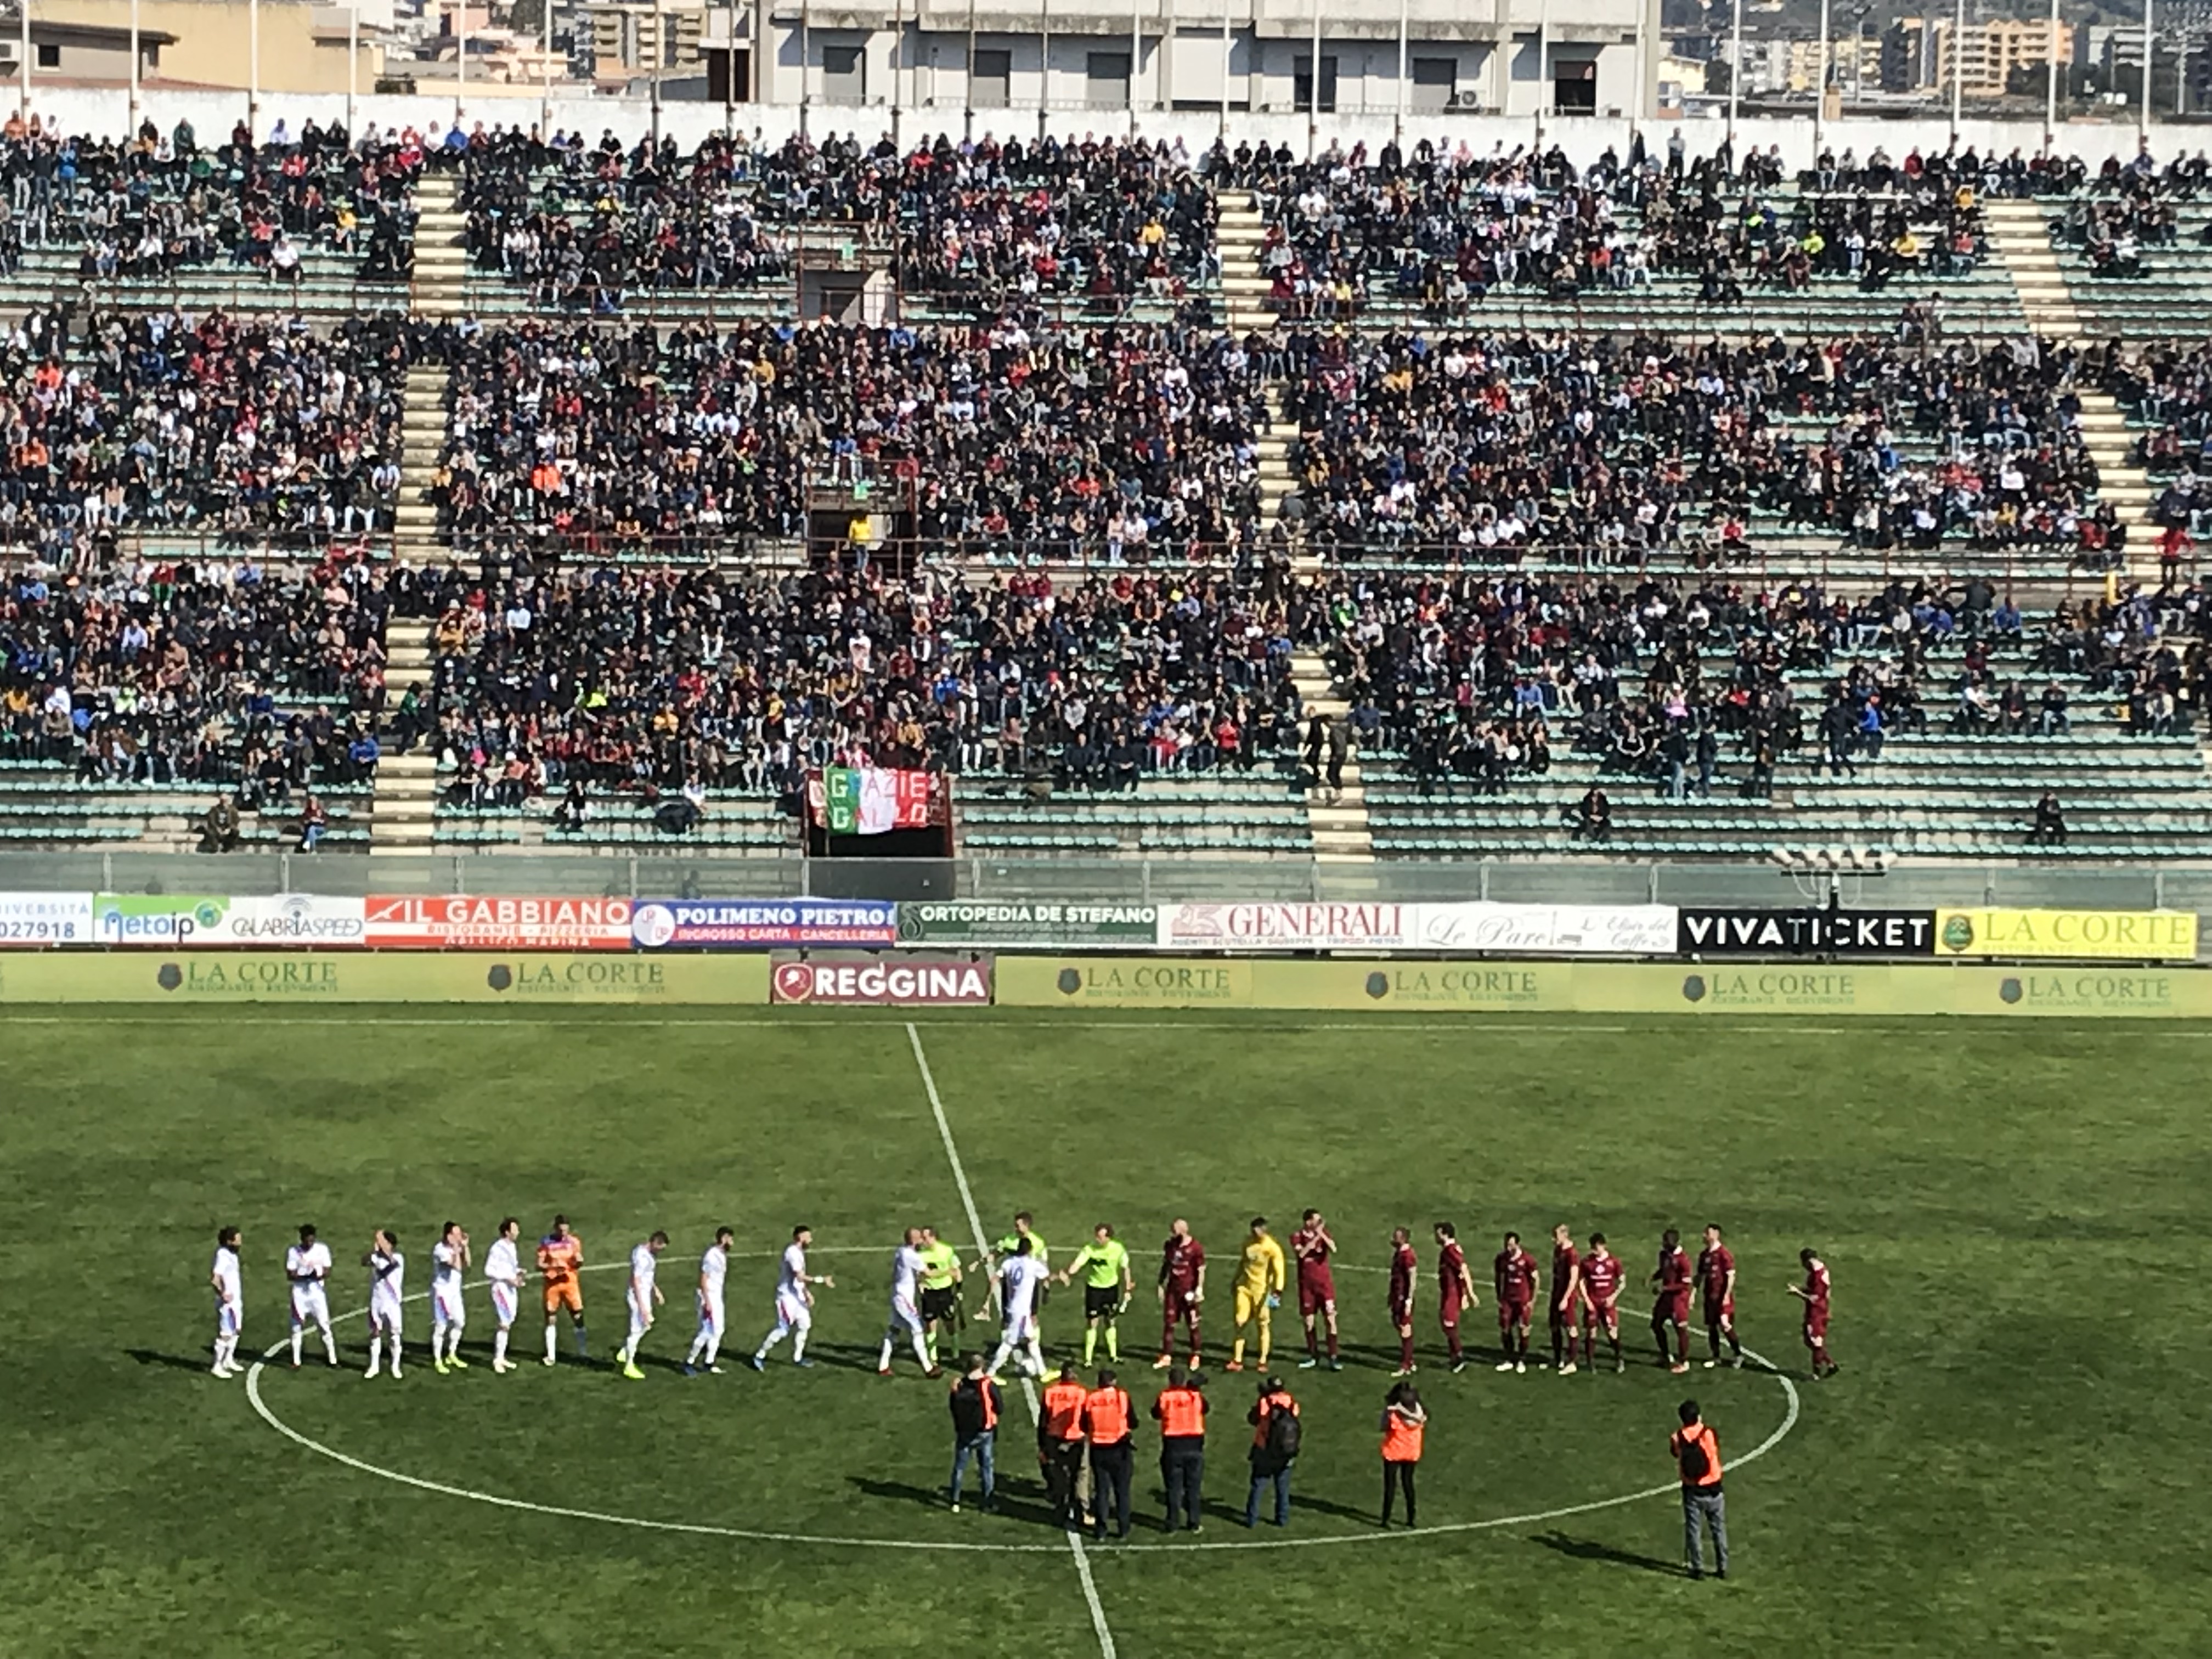 La Reggina c’è: al “Granillo” gli amaranto regalano spettacolo, 3-0 al Catania